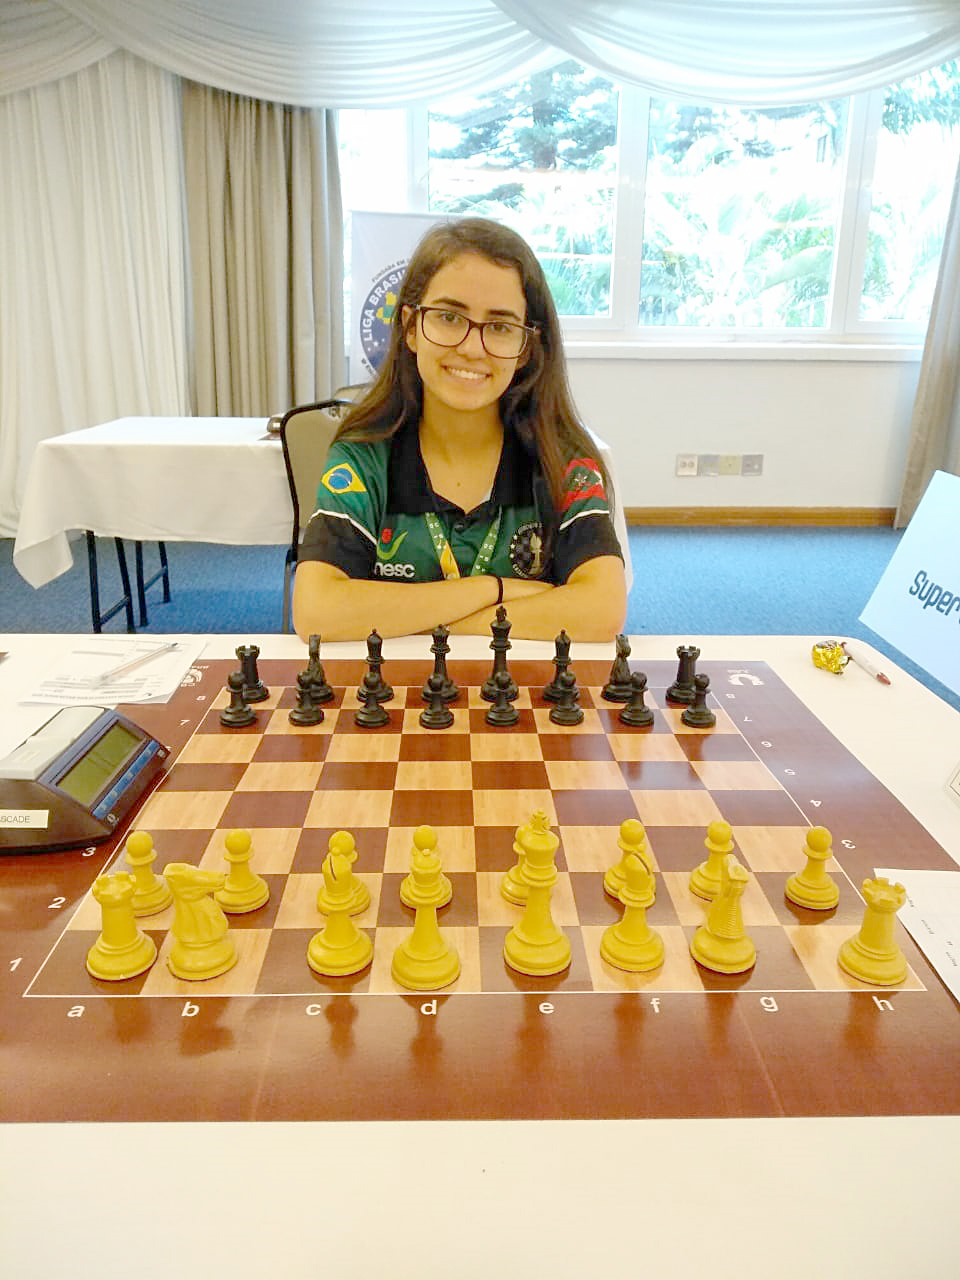 Kathiê é vice-campeã no Campeonato Brasileiro de Xadrez